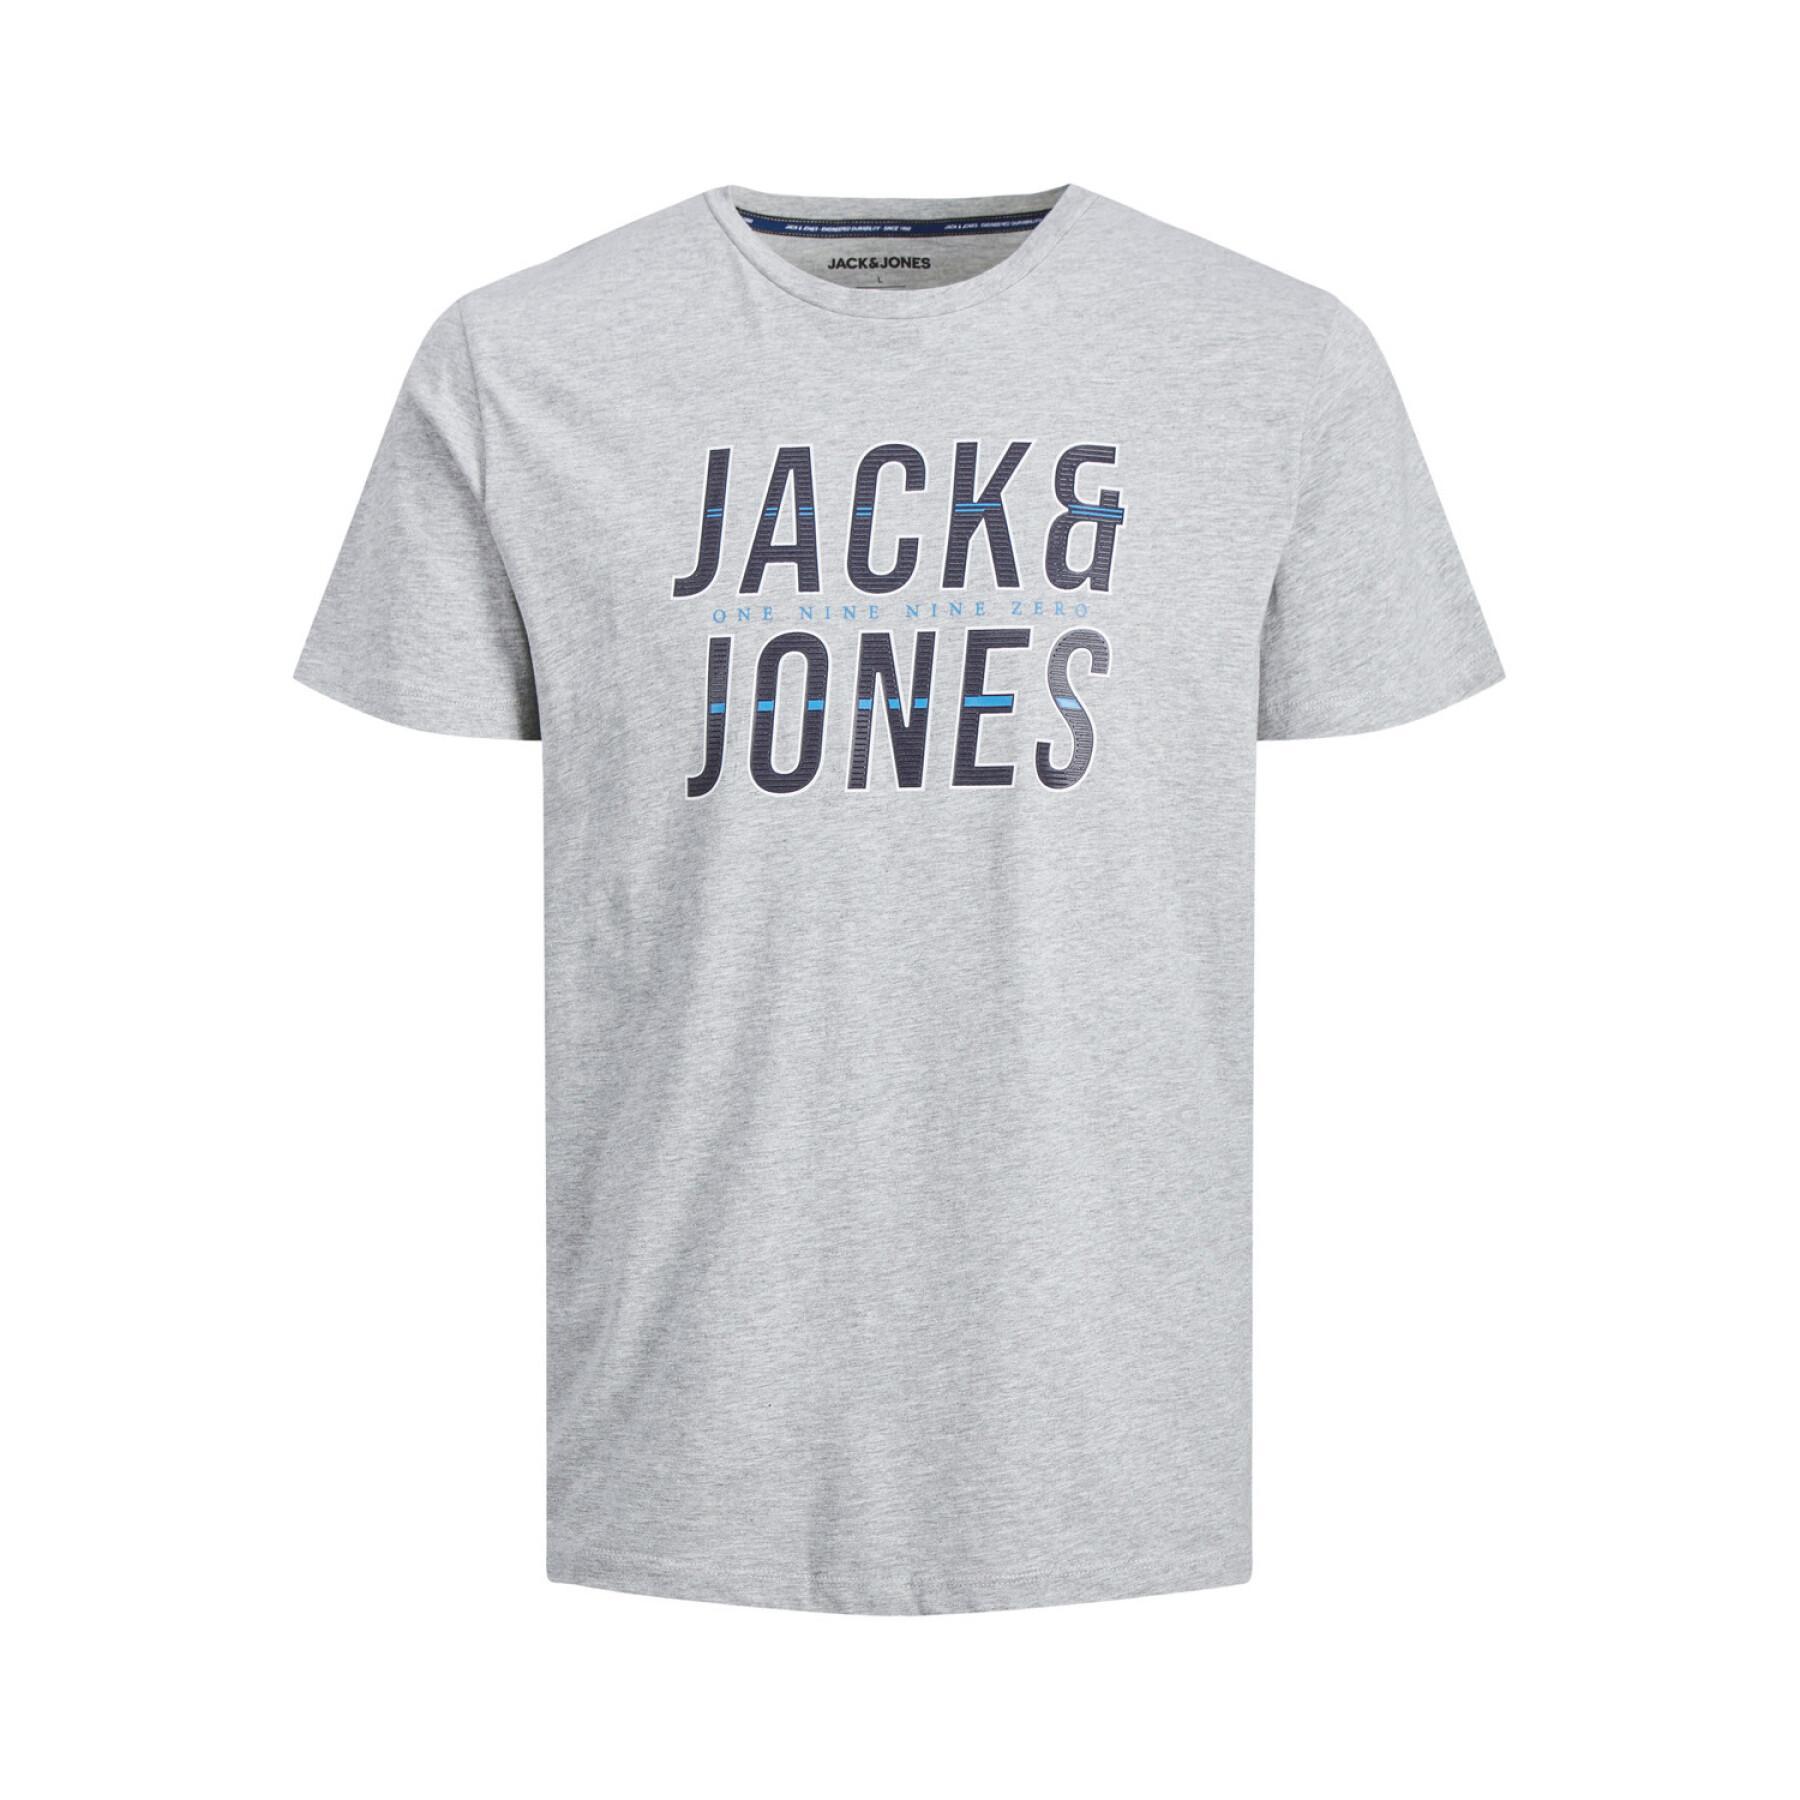 Maglietta Jack & Jones Xilo